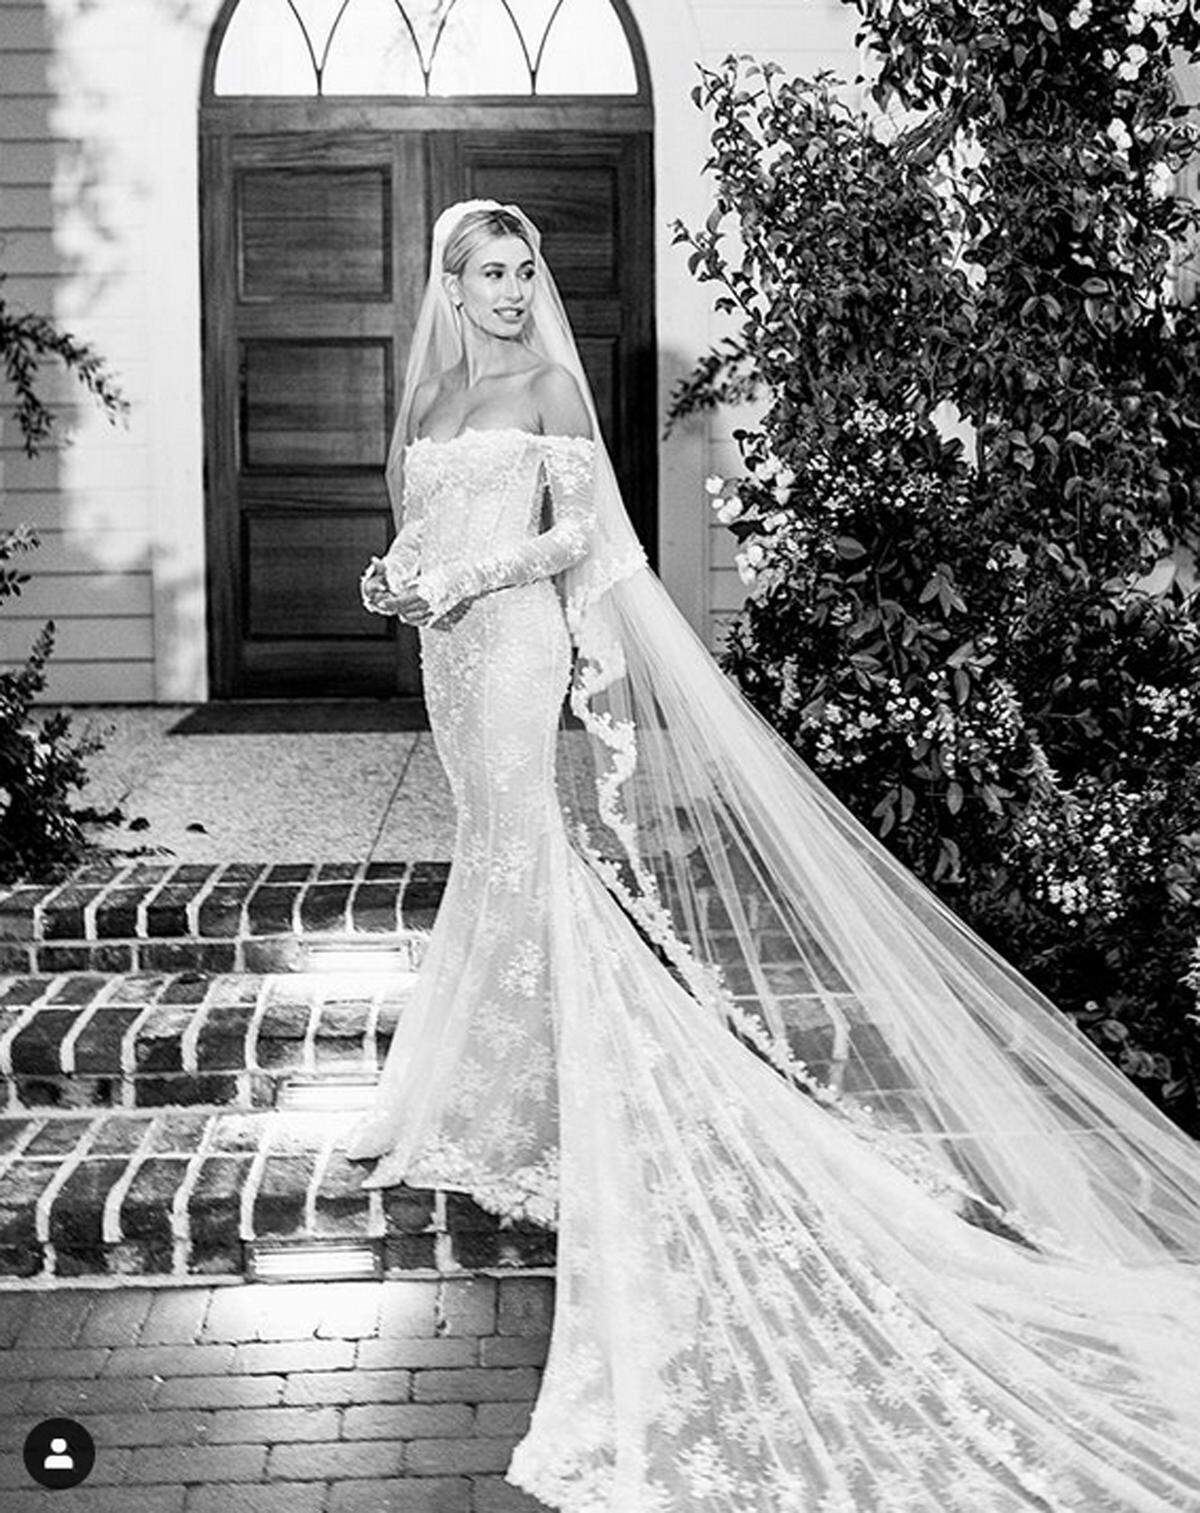 Eine Woche nach der Hochzeit von Justin Bieber und Hailey Baldwin in South Carolina hat das Model nun auf Instagram mehrere Fotos des Paares veröffentlicht. In Szene gesetzt wurde dabei auch das Brautkleid der 22-Jährigen, das von Virgil Abloh, Designer von Off-White und der Männerkollektion von Louis Vuitton, entworfen wurde.